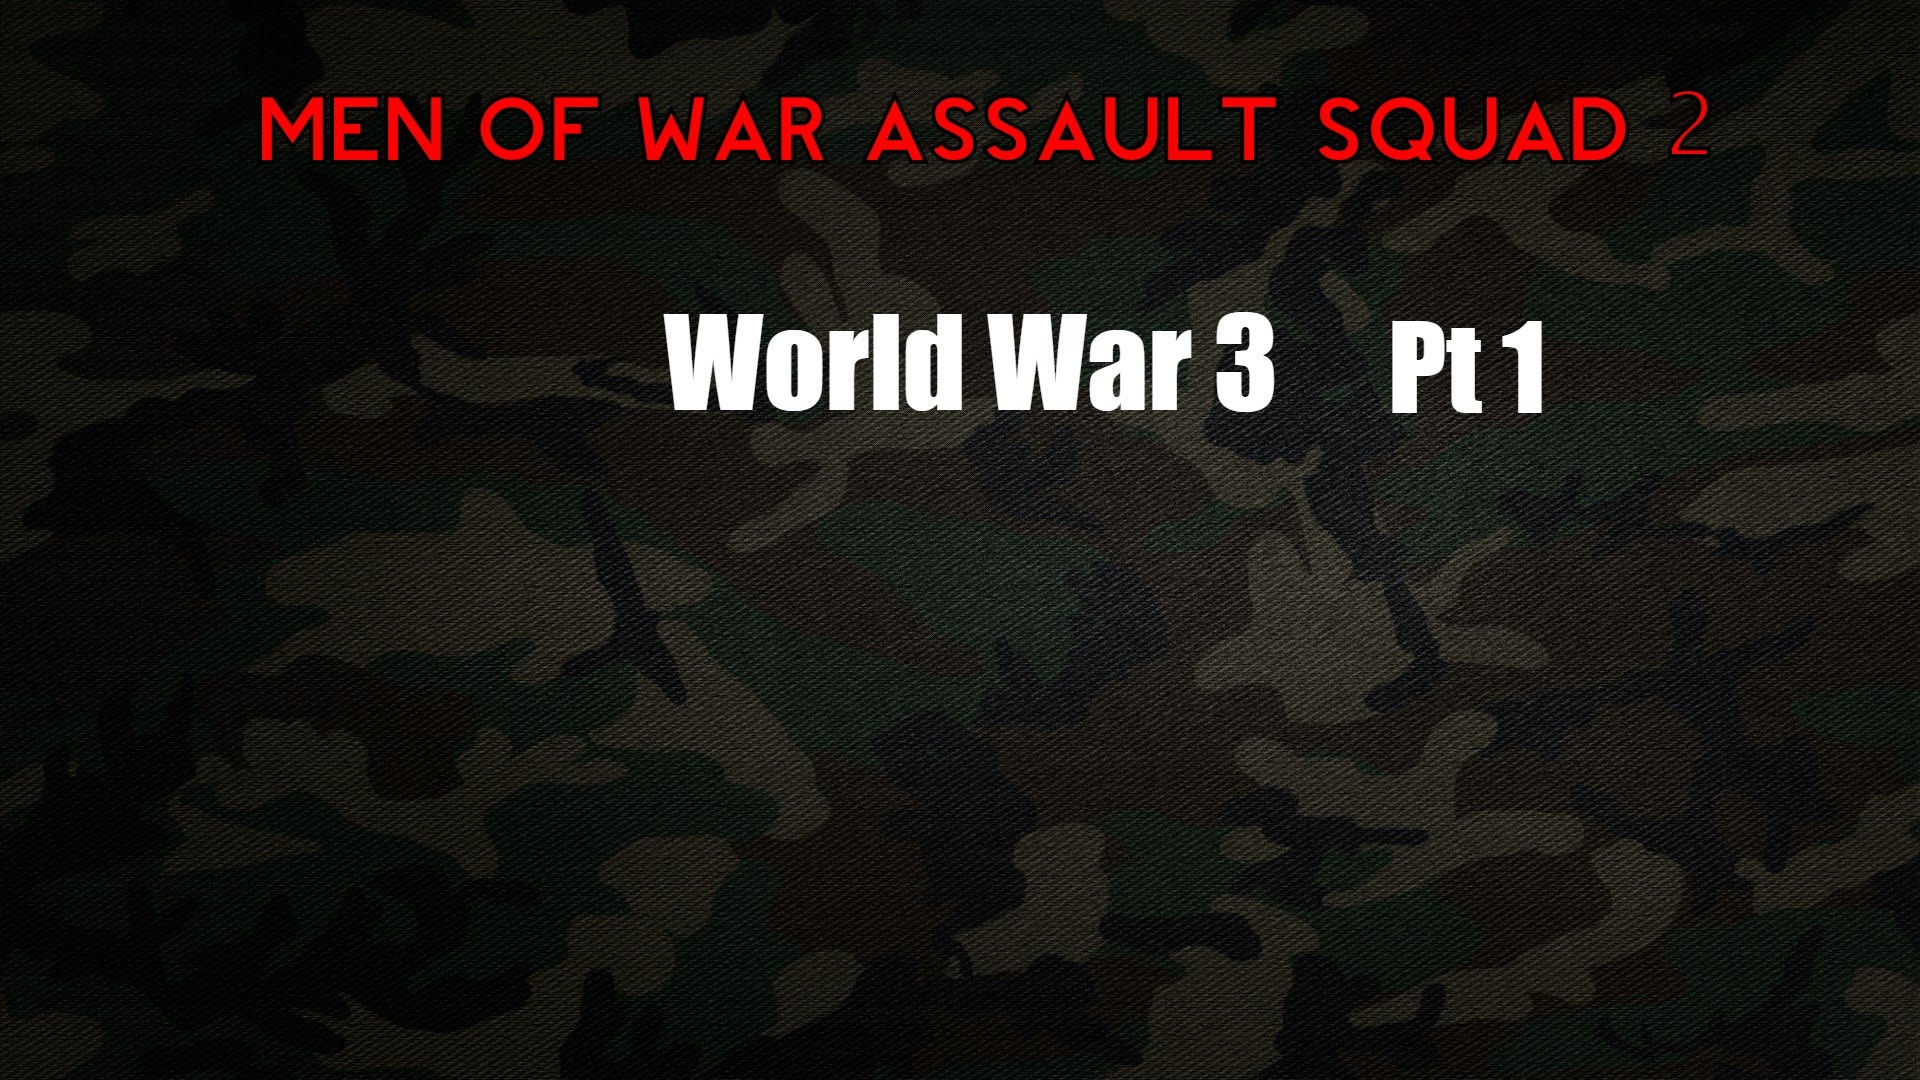 Men of War assault squad 2   World War 3 pt 1